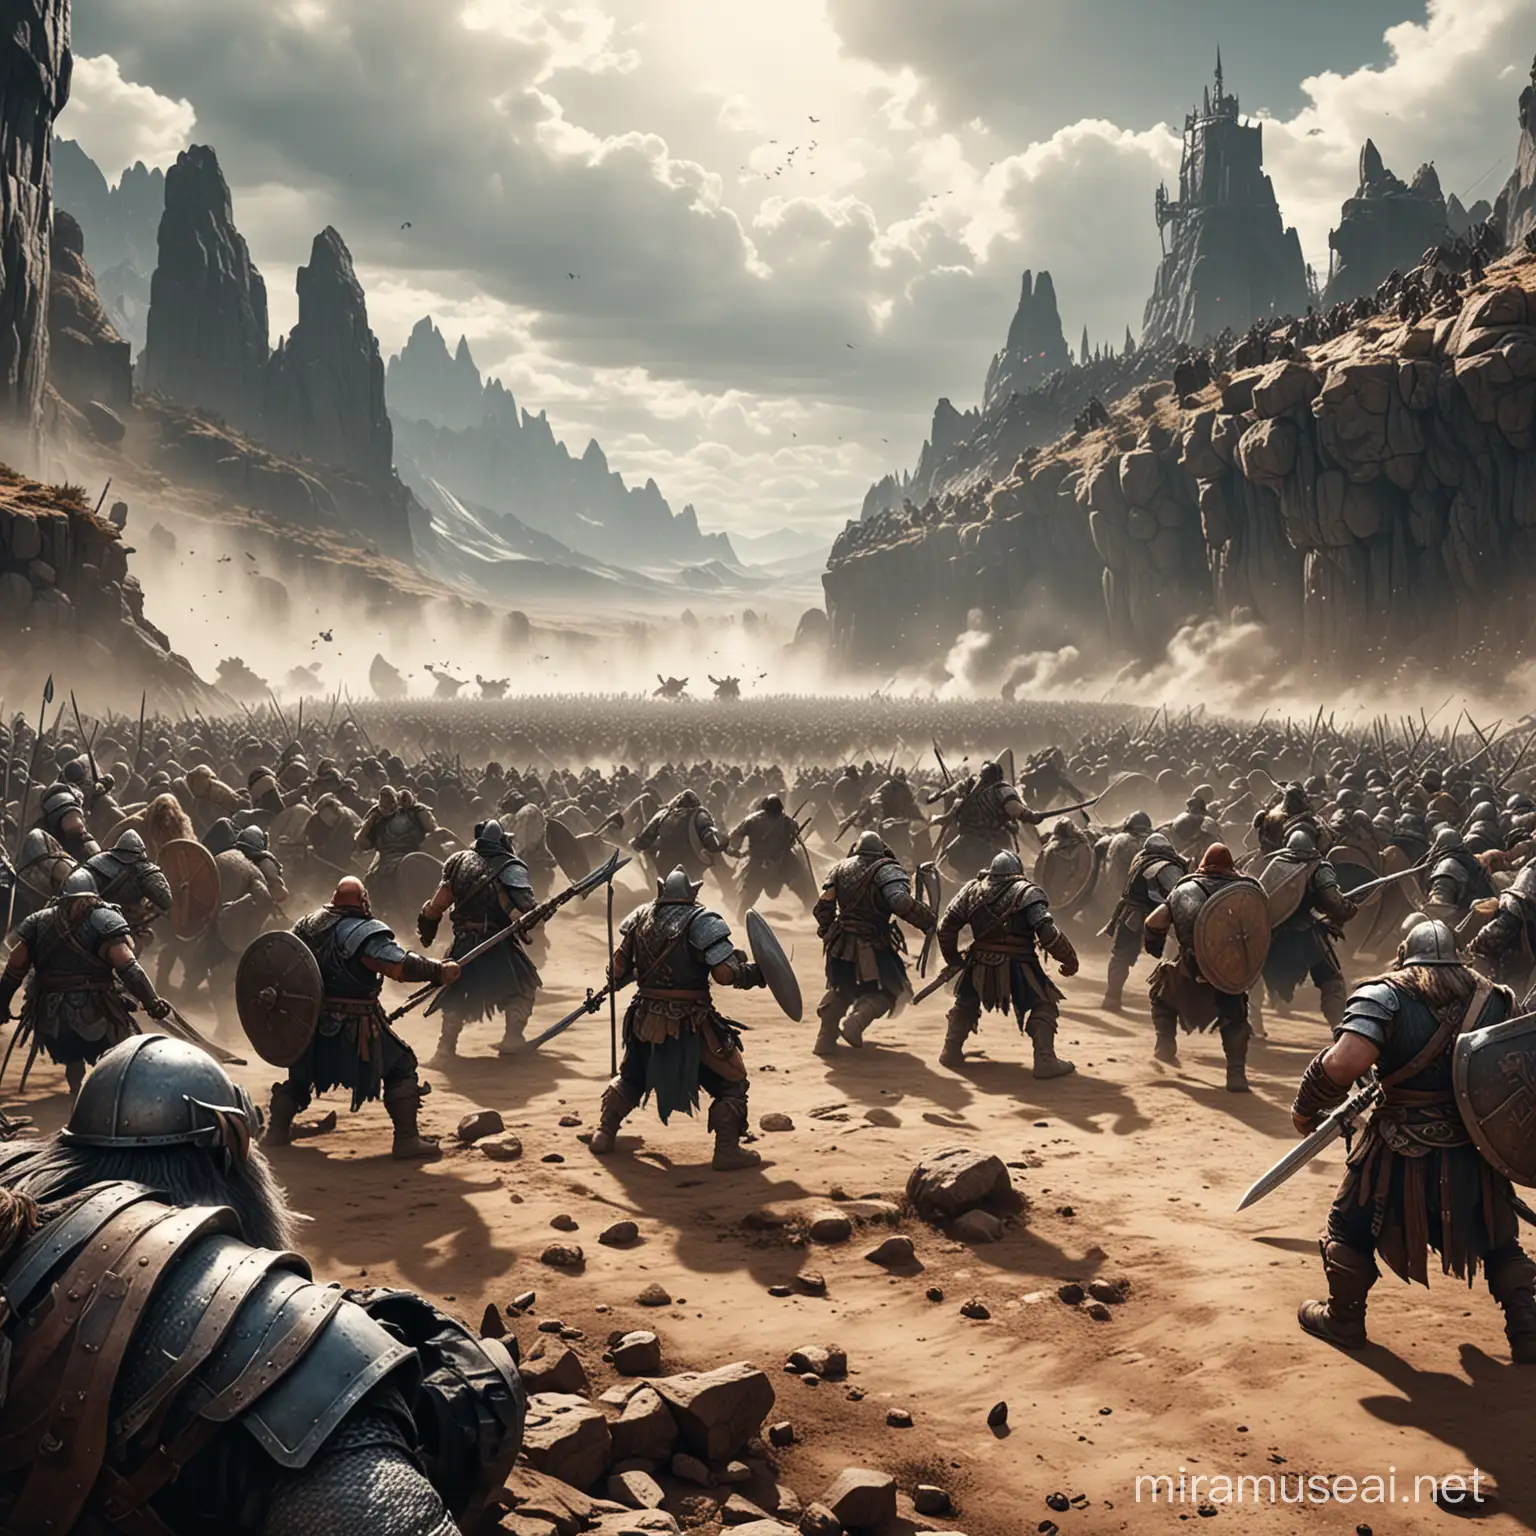 cinematic battle scene, orvs v. dwarves, fantasy setting, comic book ink style, wide shot.